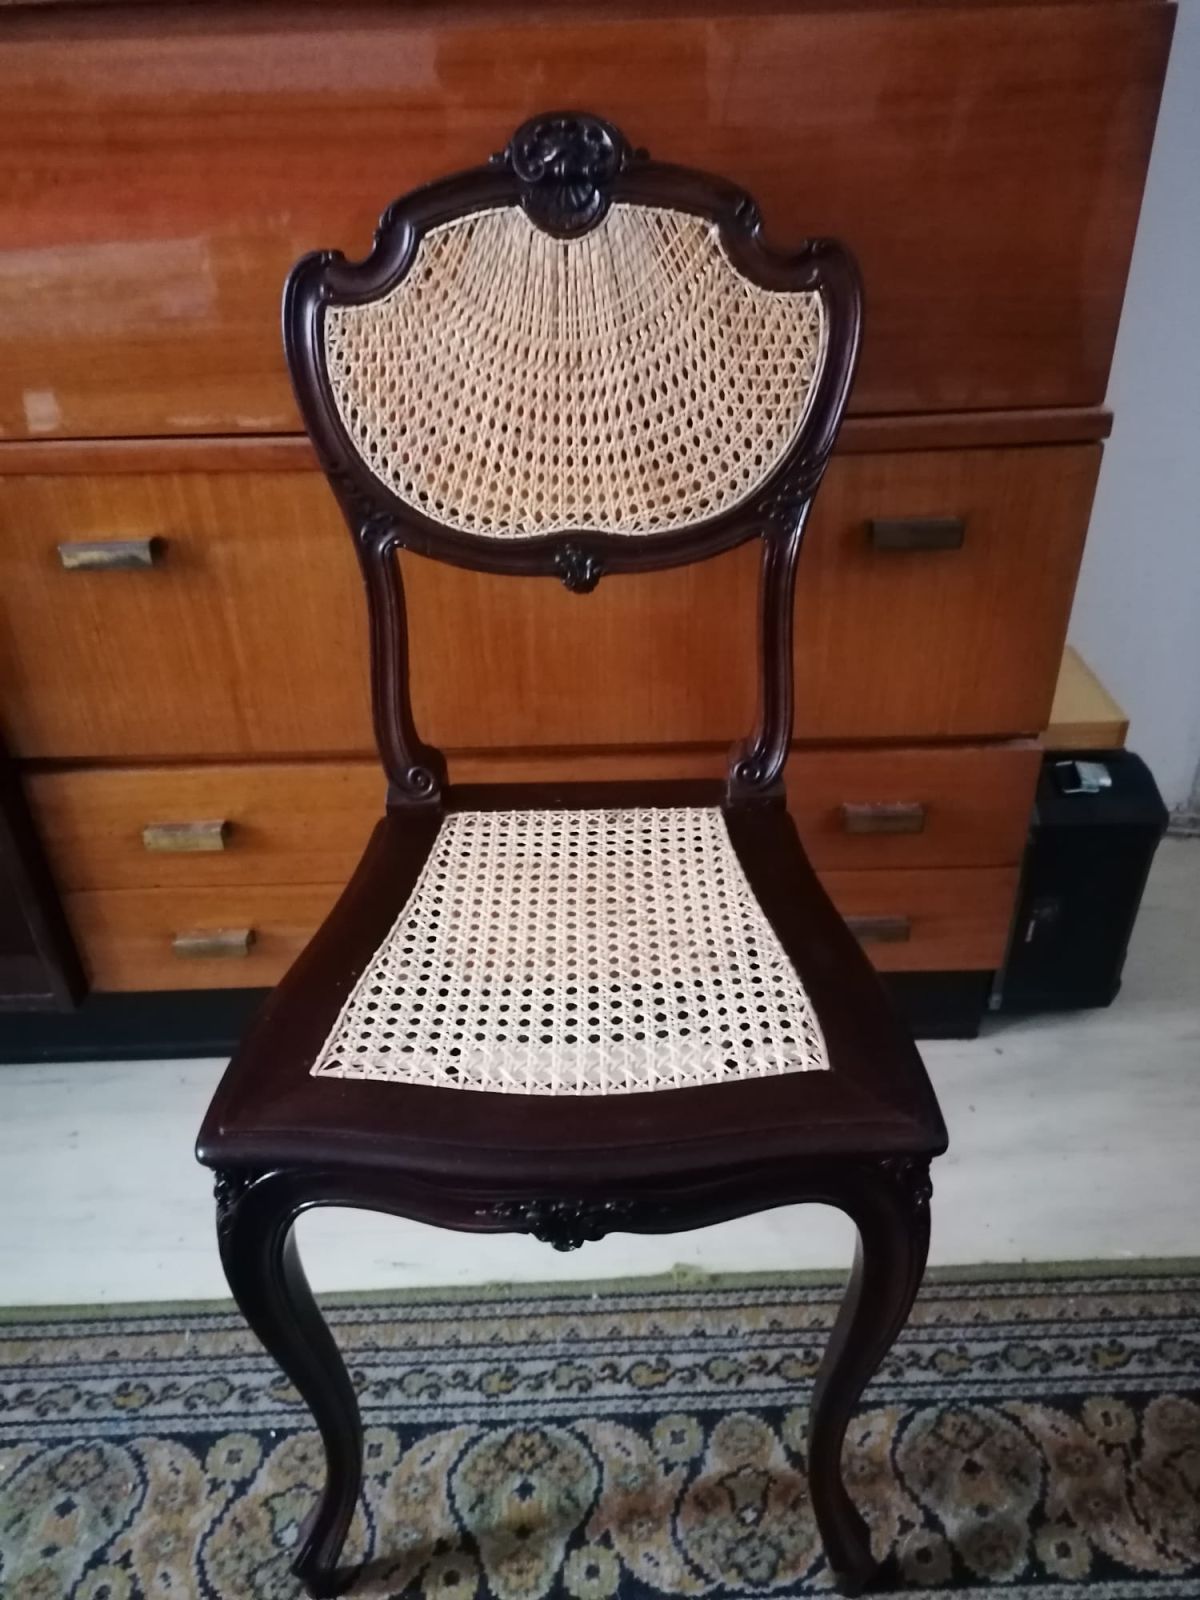 Starý nábytek dostane nový život. Pro restaurování a renovaci si v našem internetovém obchodě kupte kvalitní rákosové popruhy na opravu židlí.